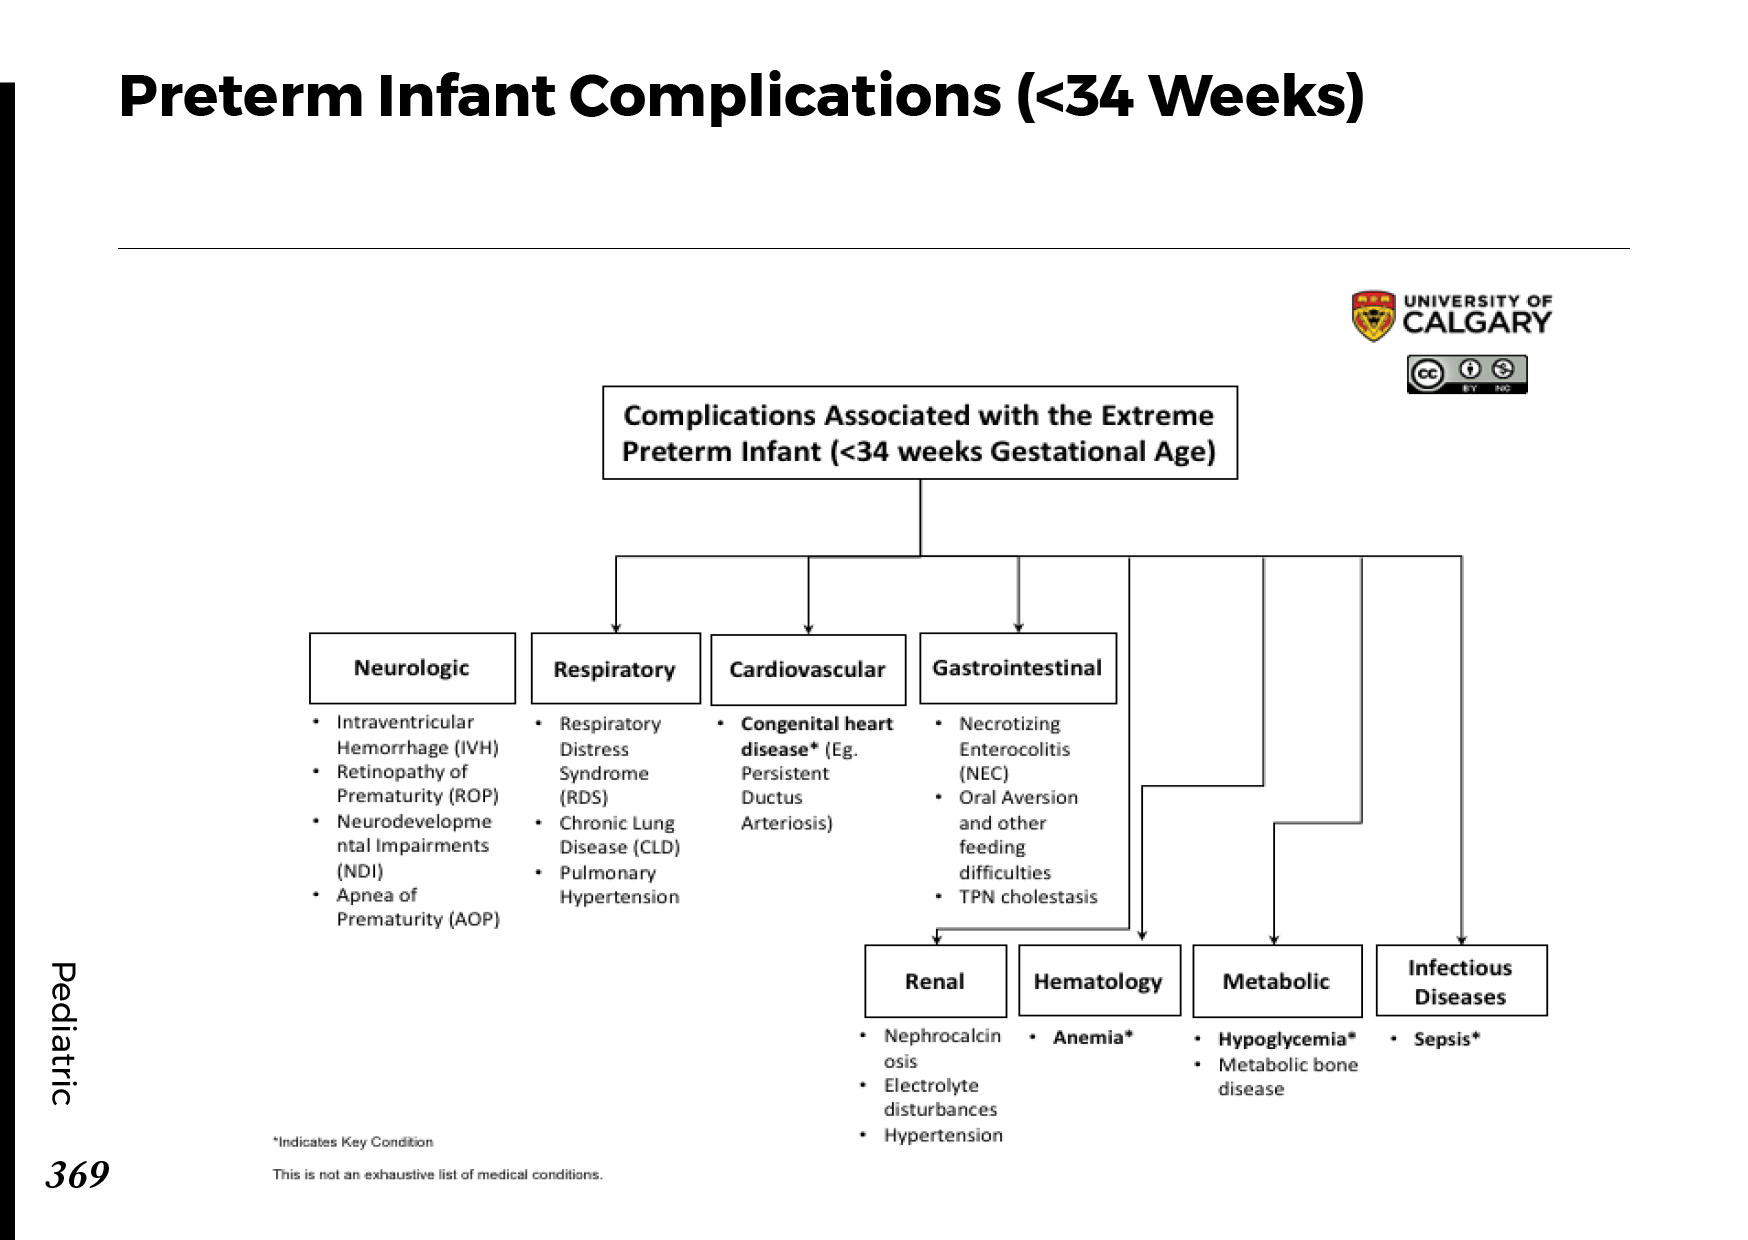 PRETERM INFANT COMPLICATIONS (<34 WEEKS) Scheme